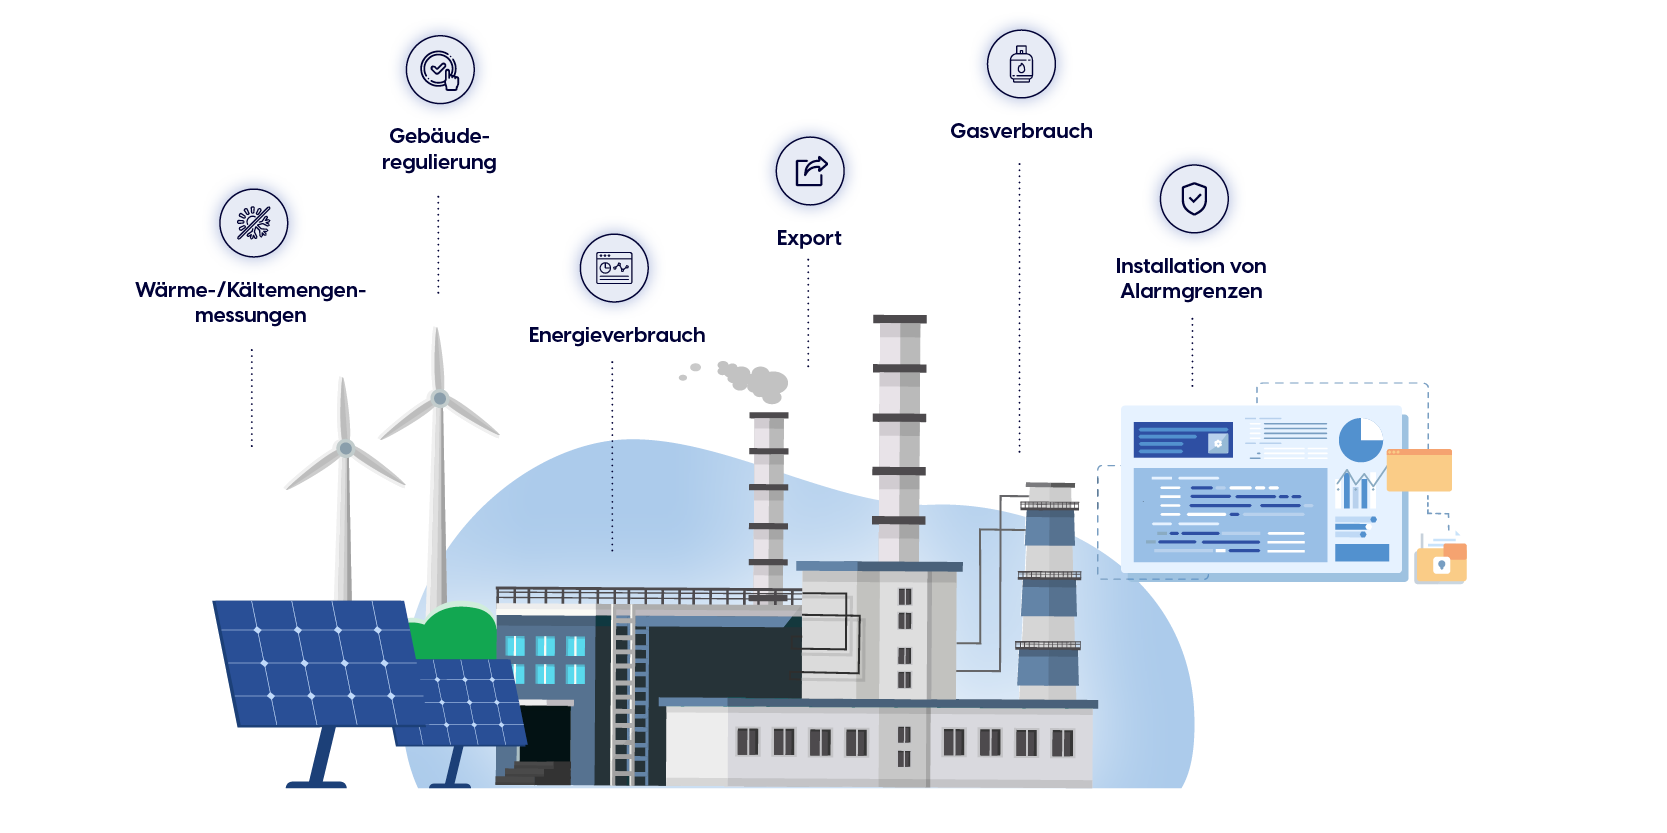 Unsere Obodo Energy Software bildet eine Datenauflistung mit wichtigen energetischen Daten, um Ihren Energiehaushalt im Unternehmen oder in Ihrem Gebäude einzusparen und zu kontrollieren.